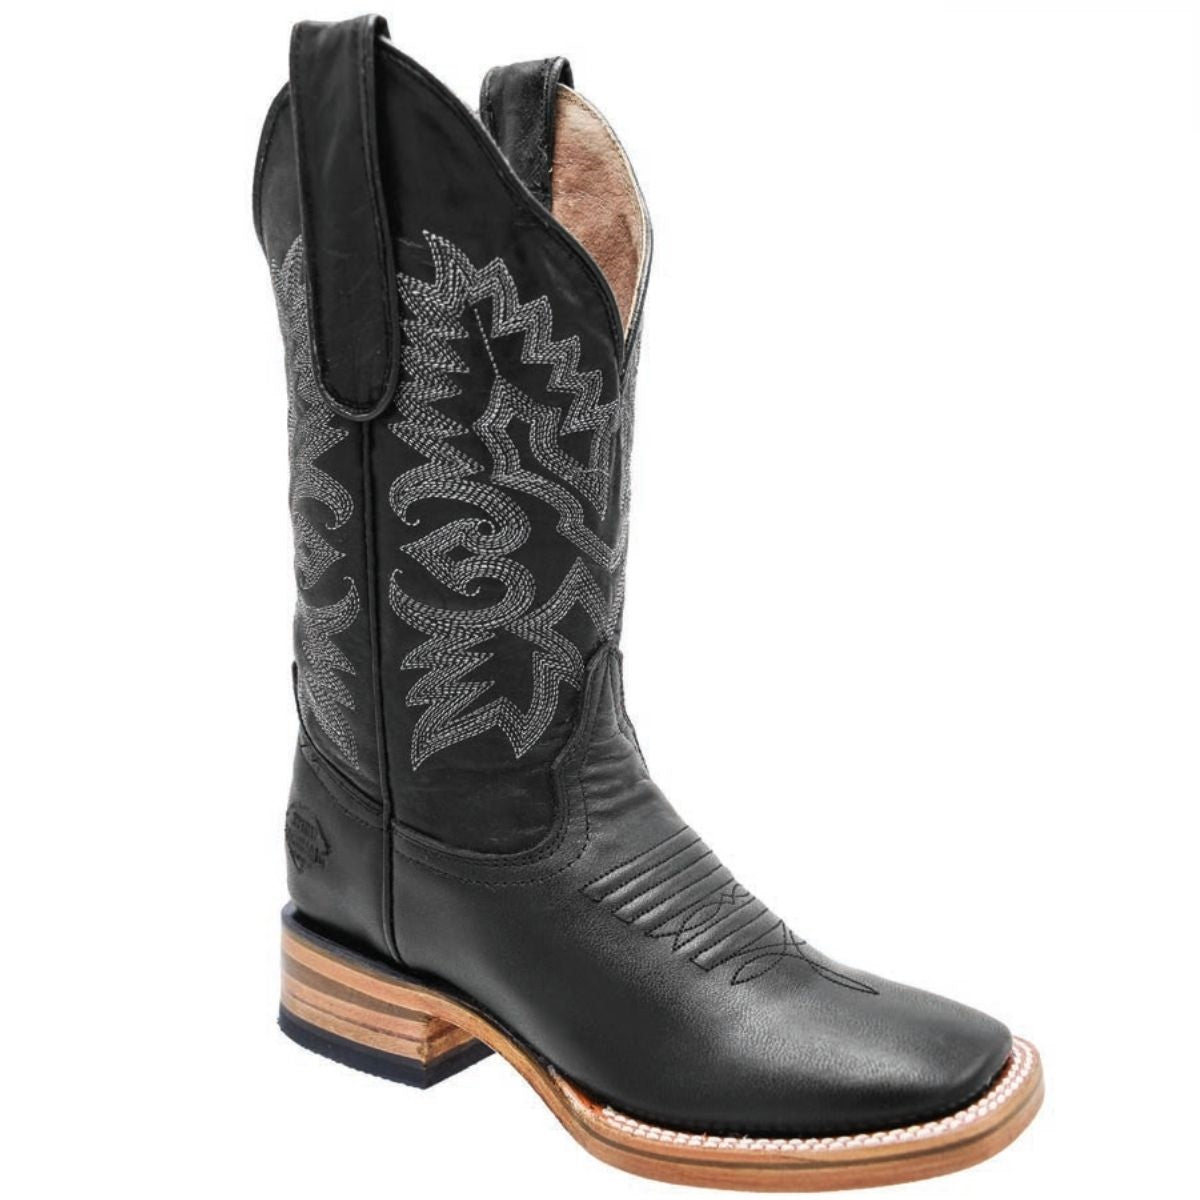 Botas Vaqueras TM-WD0506-506 - Western Boots